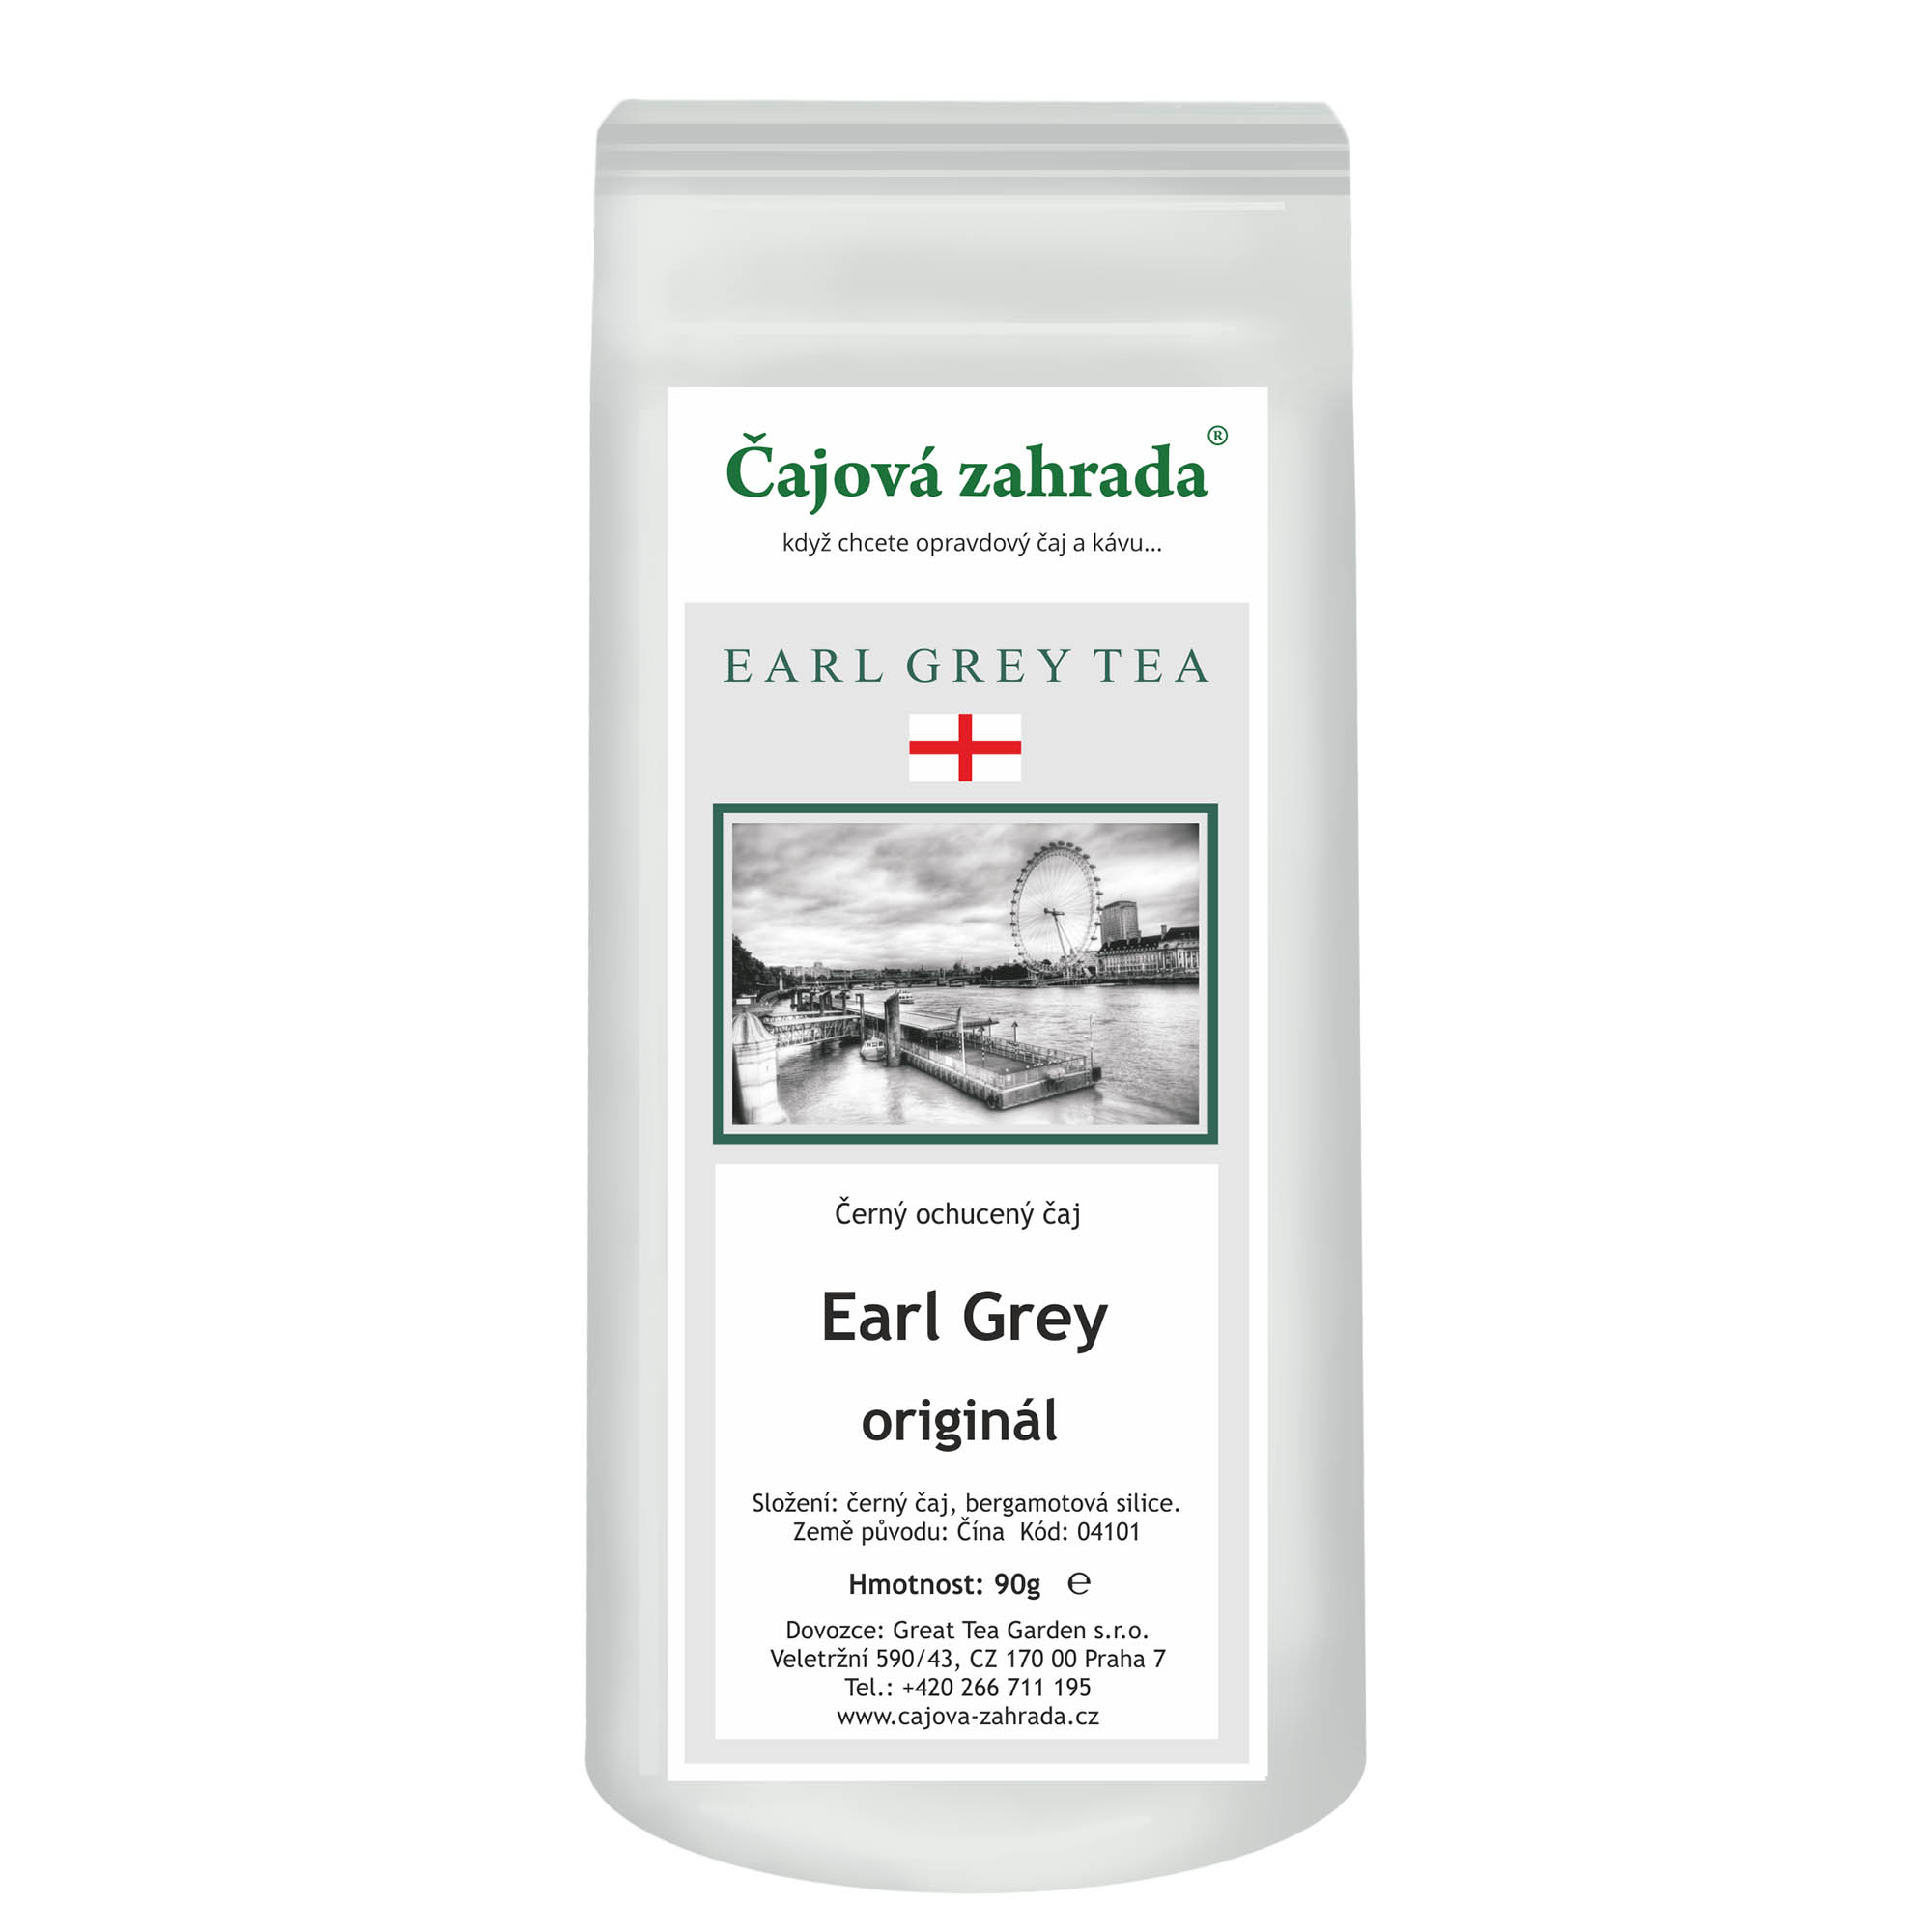 Čajová zahrada Earl Grey - černý ochucený čaj Varianta: černý čaj 1000g